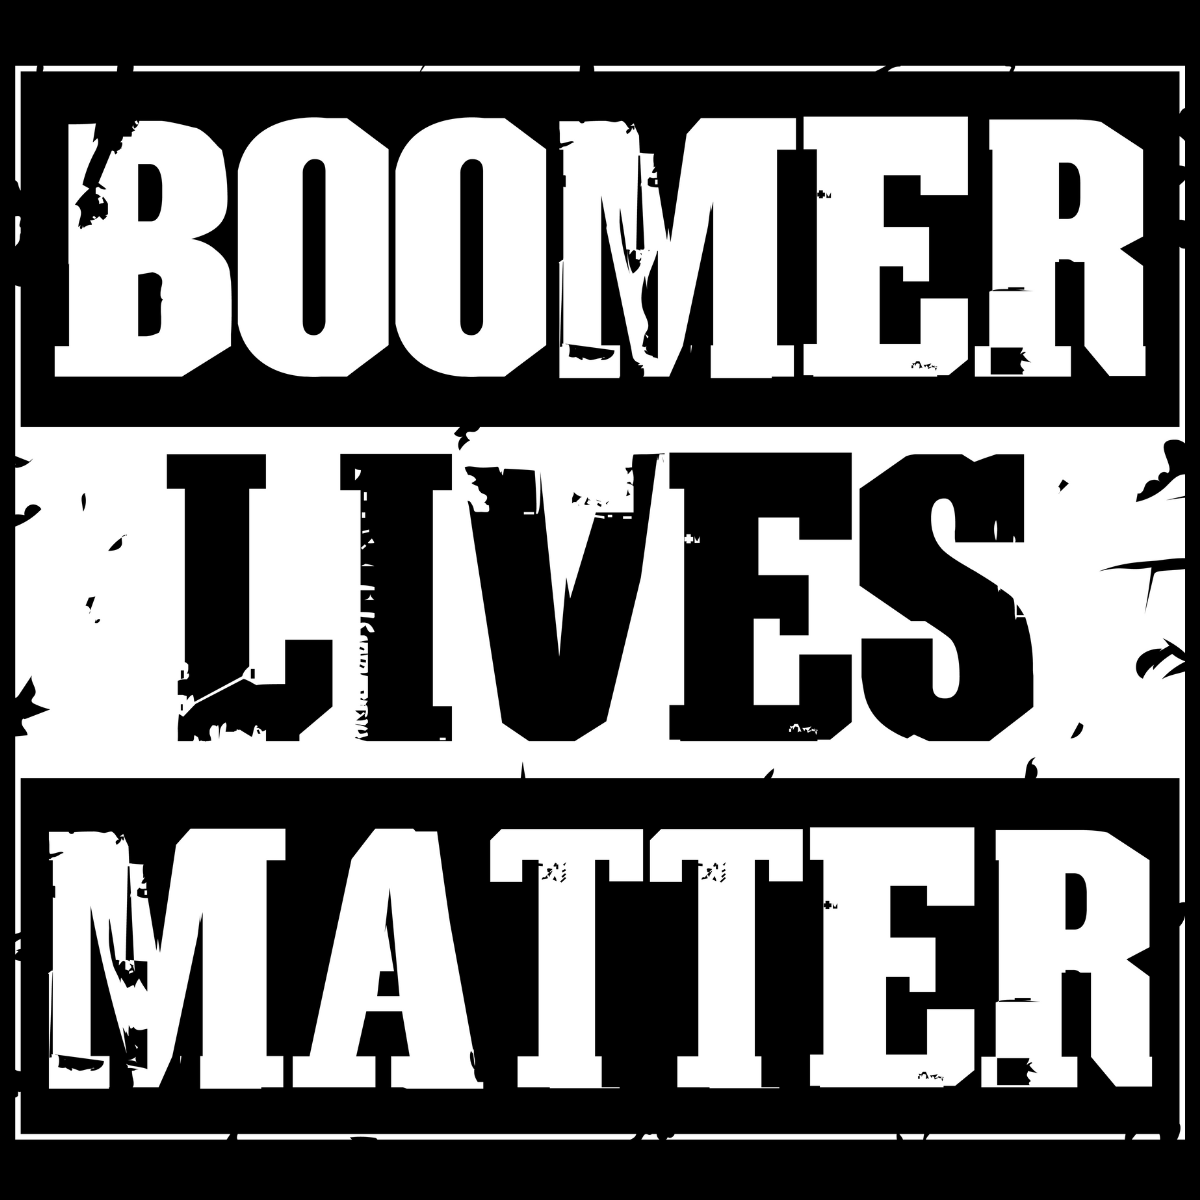 Boomer Lives Matter Tee